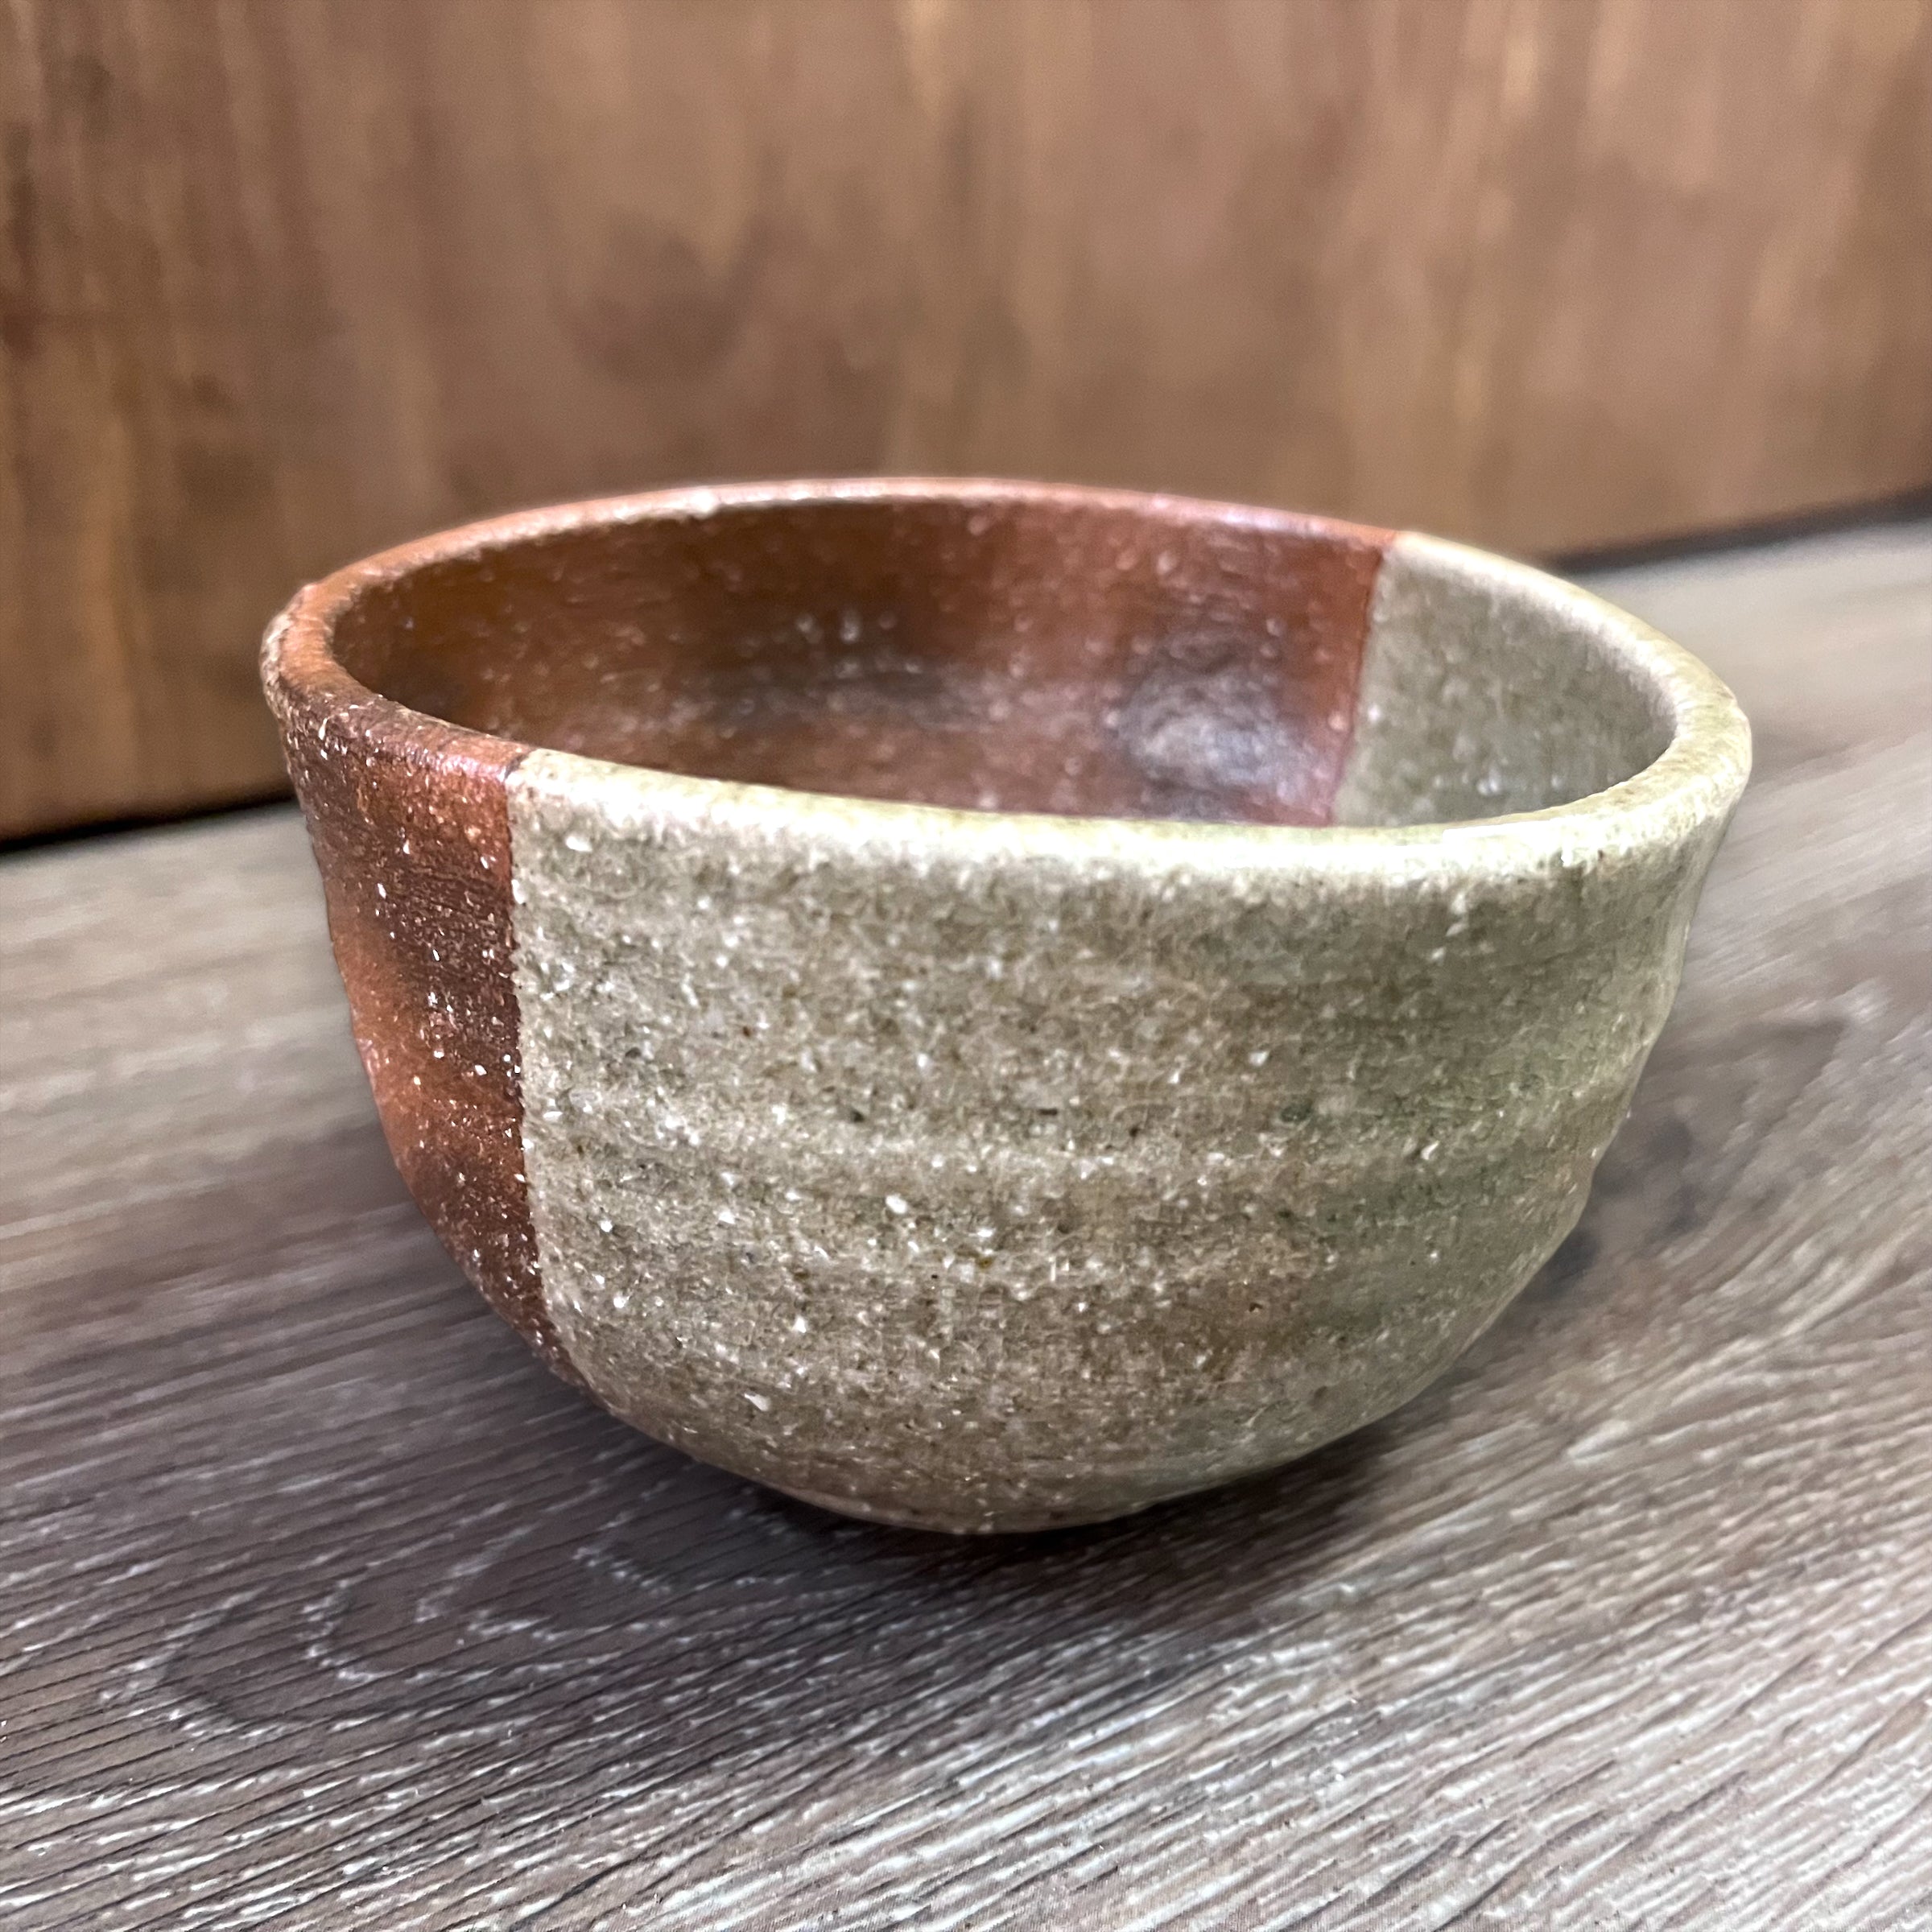 Japanese Handmade Tea Pitcher (fairness cup) - Autumn